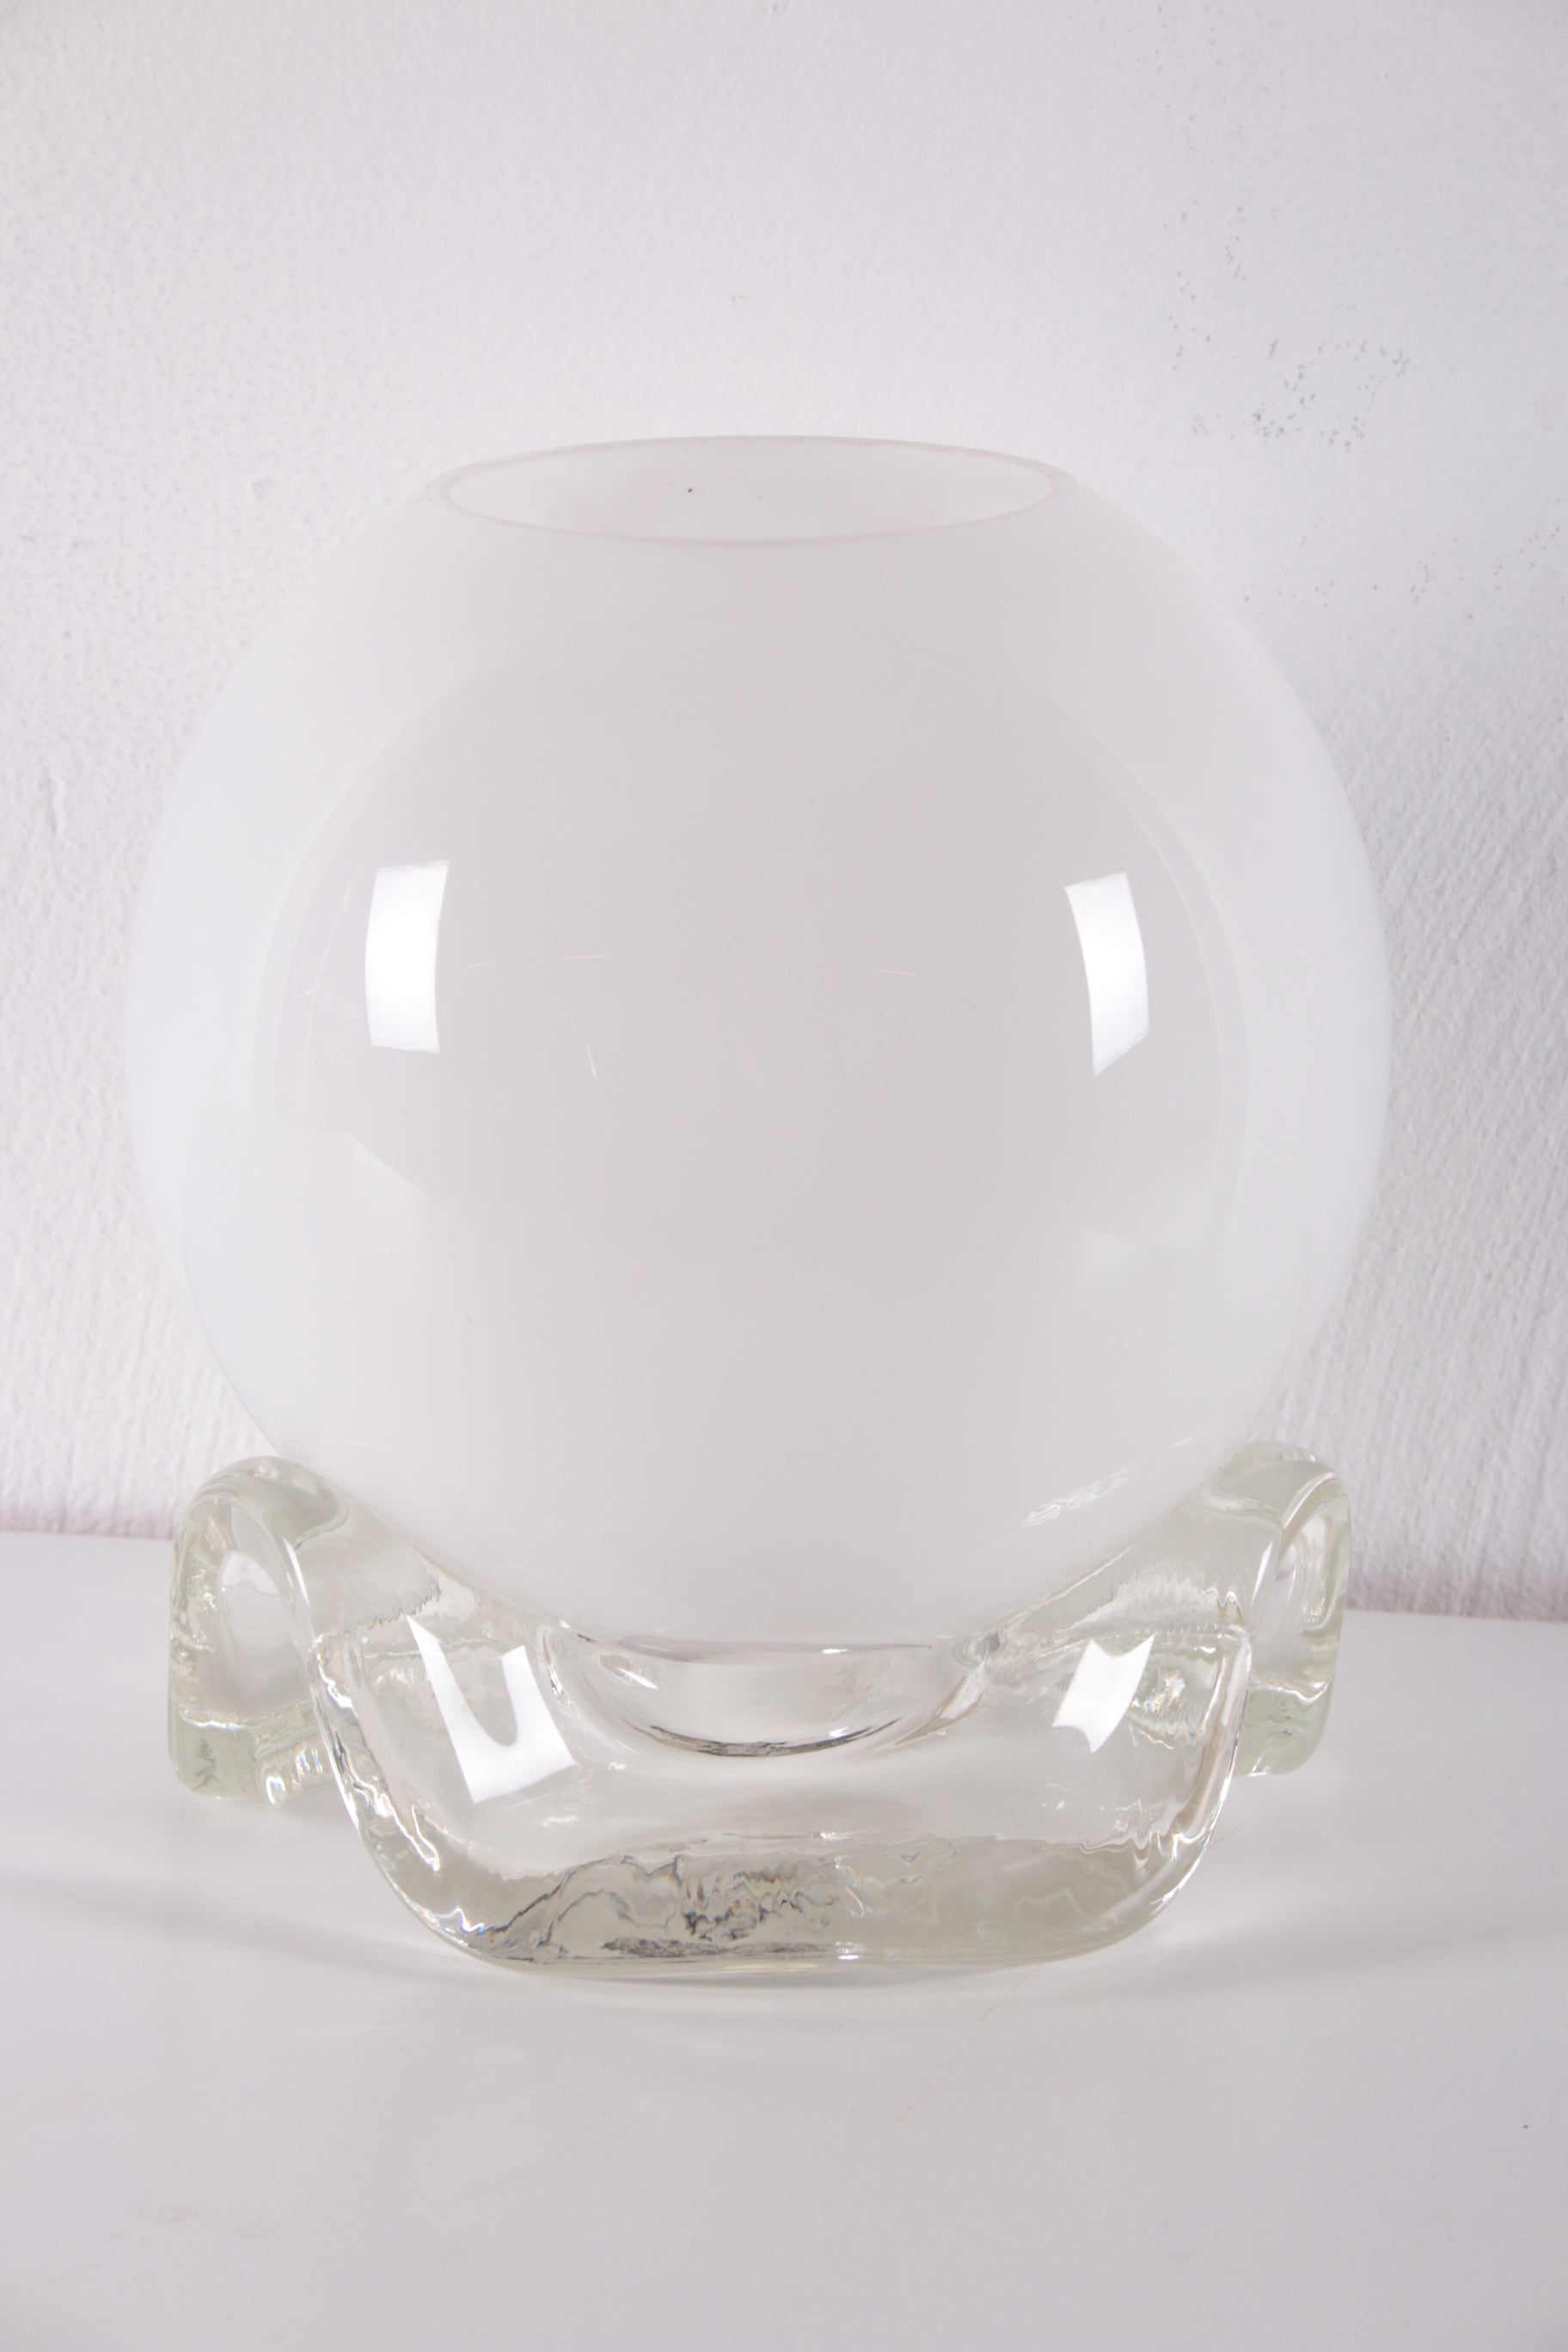 Vintage Wit Glazen Tafellampje van het merk Limburg jaren 60s voorkant licht uit